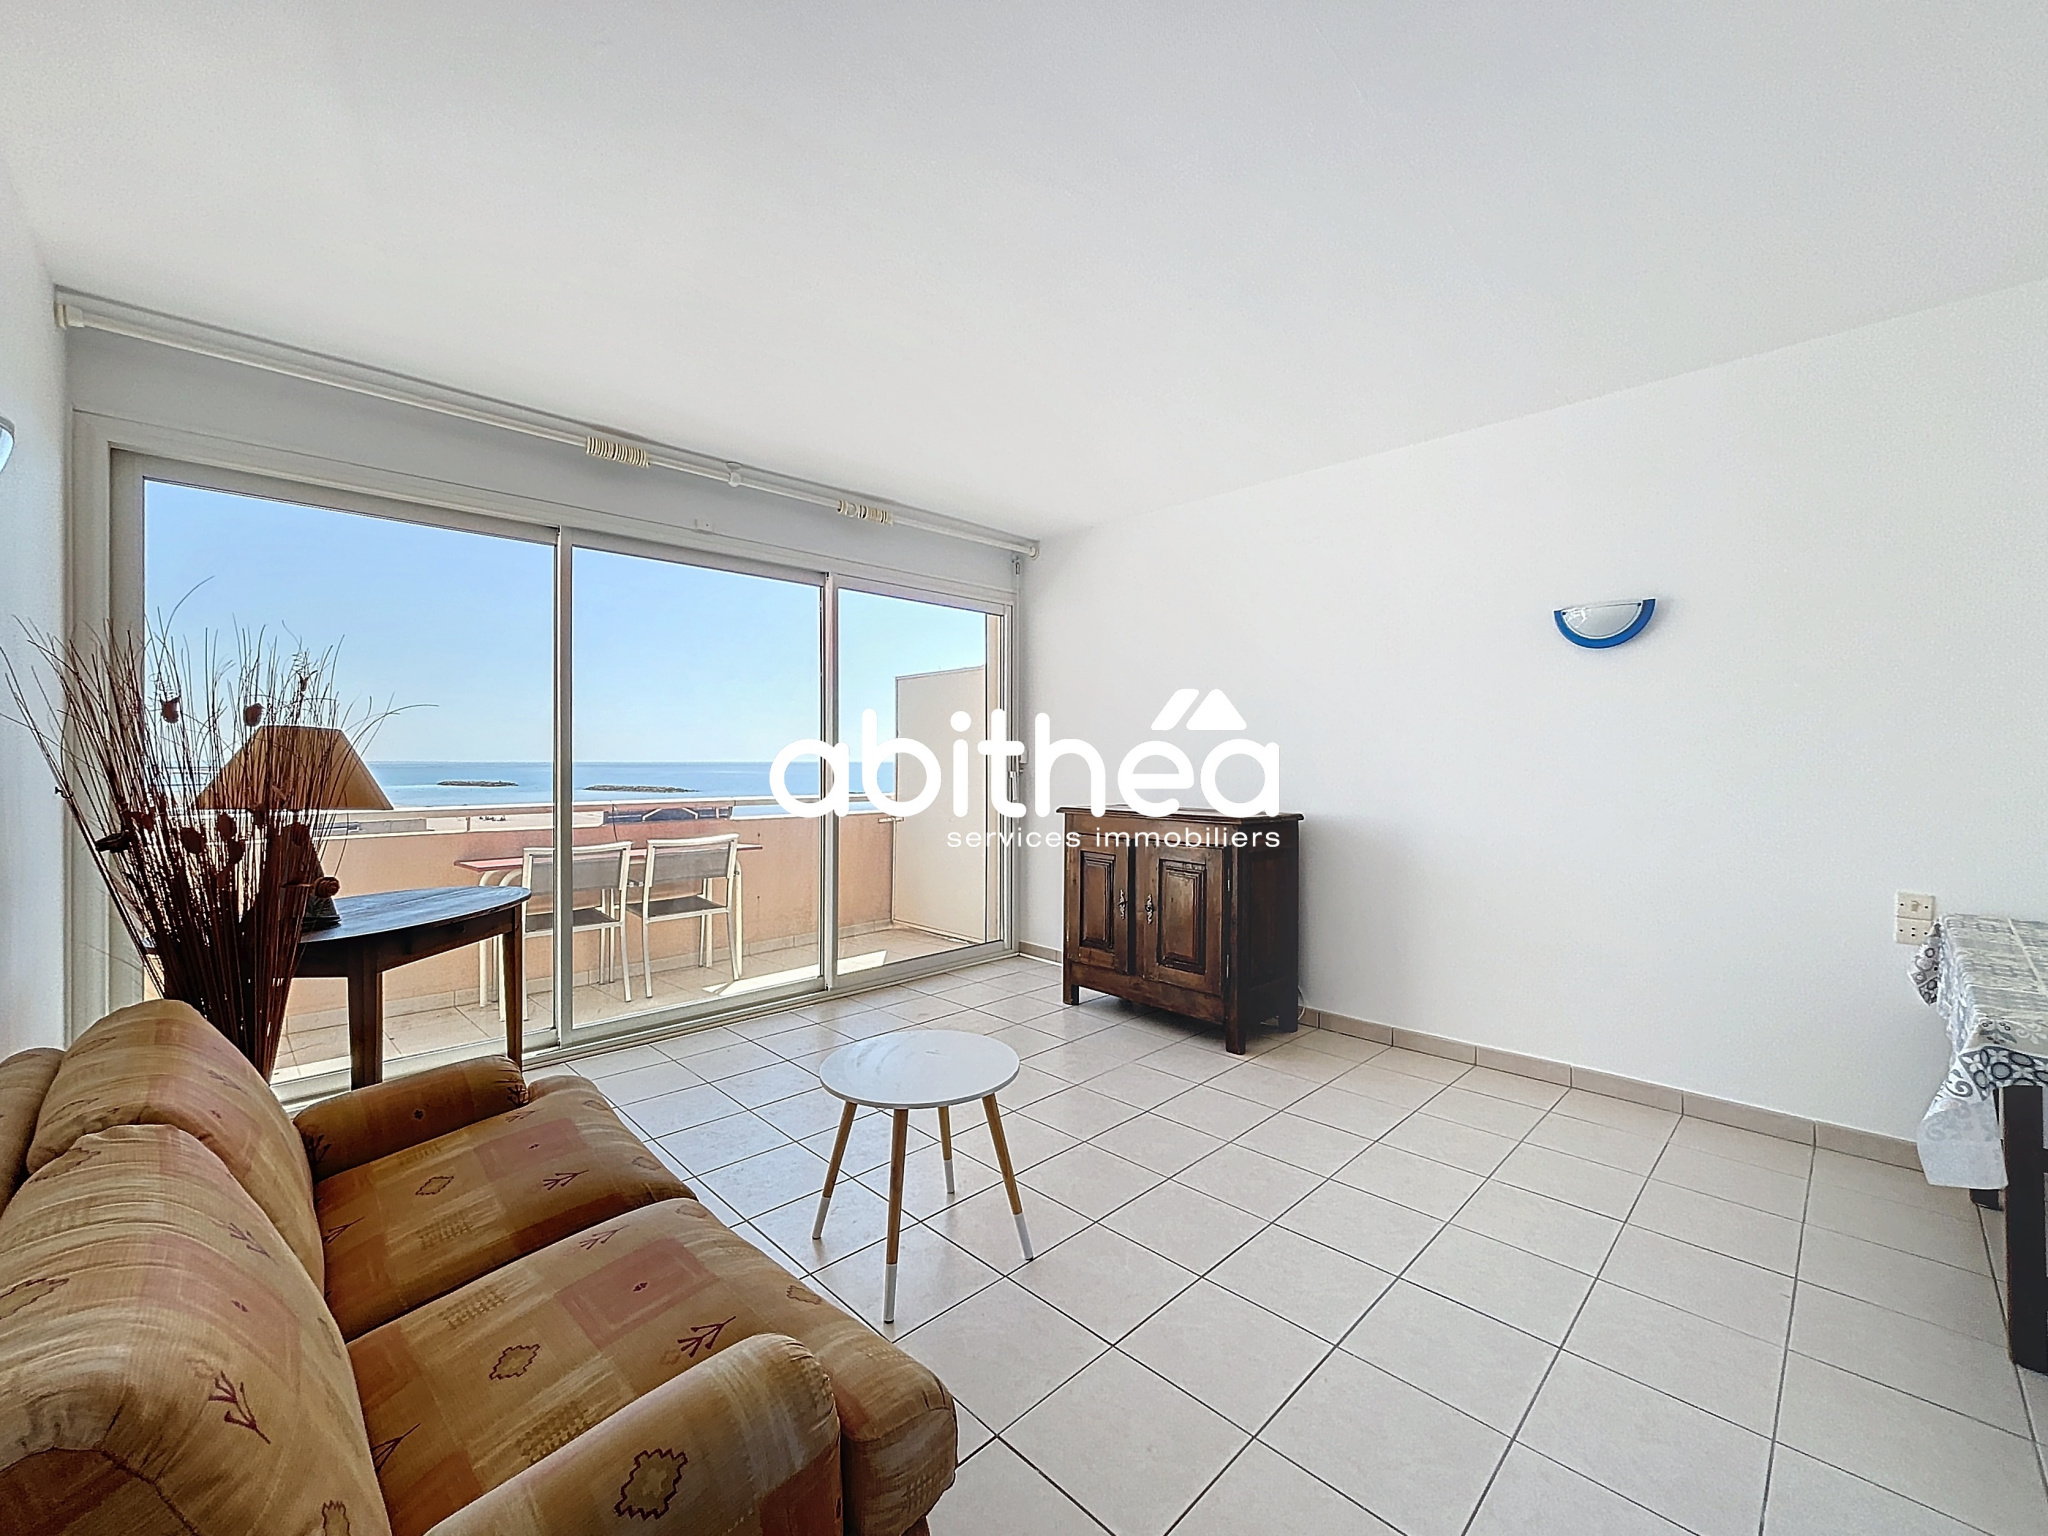 Vente Appartement 30m² 1 Pièce à Valras-Plage (34350) - Abithea